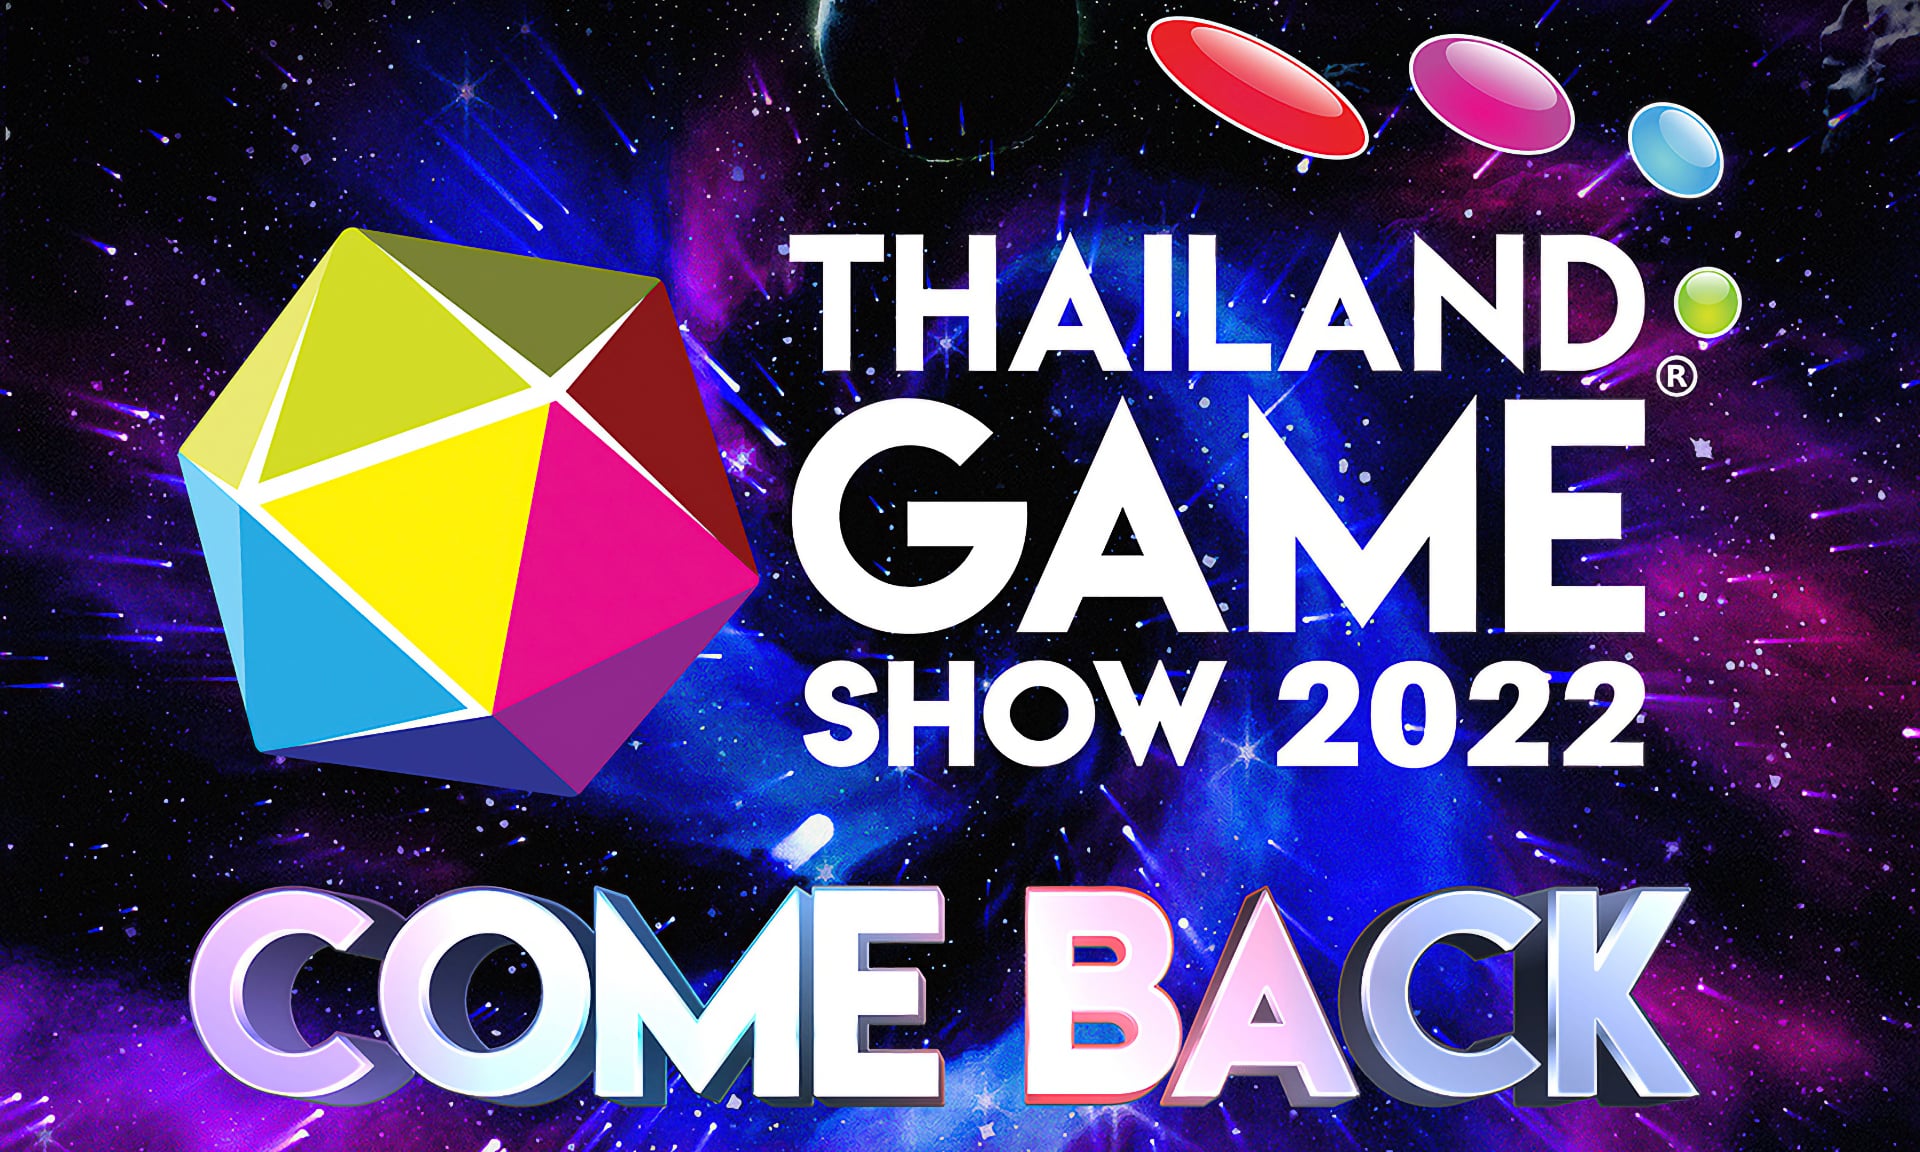 สรุป 4 อย่างที่ควรรู้ ถ้าจะไปงาน Thailand Game Show 2022 ที่ศูนย์สิริกิติ์ 21-23 ต.ค. นี้!